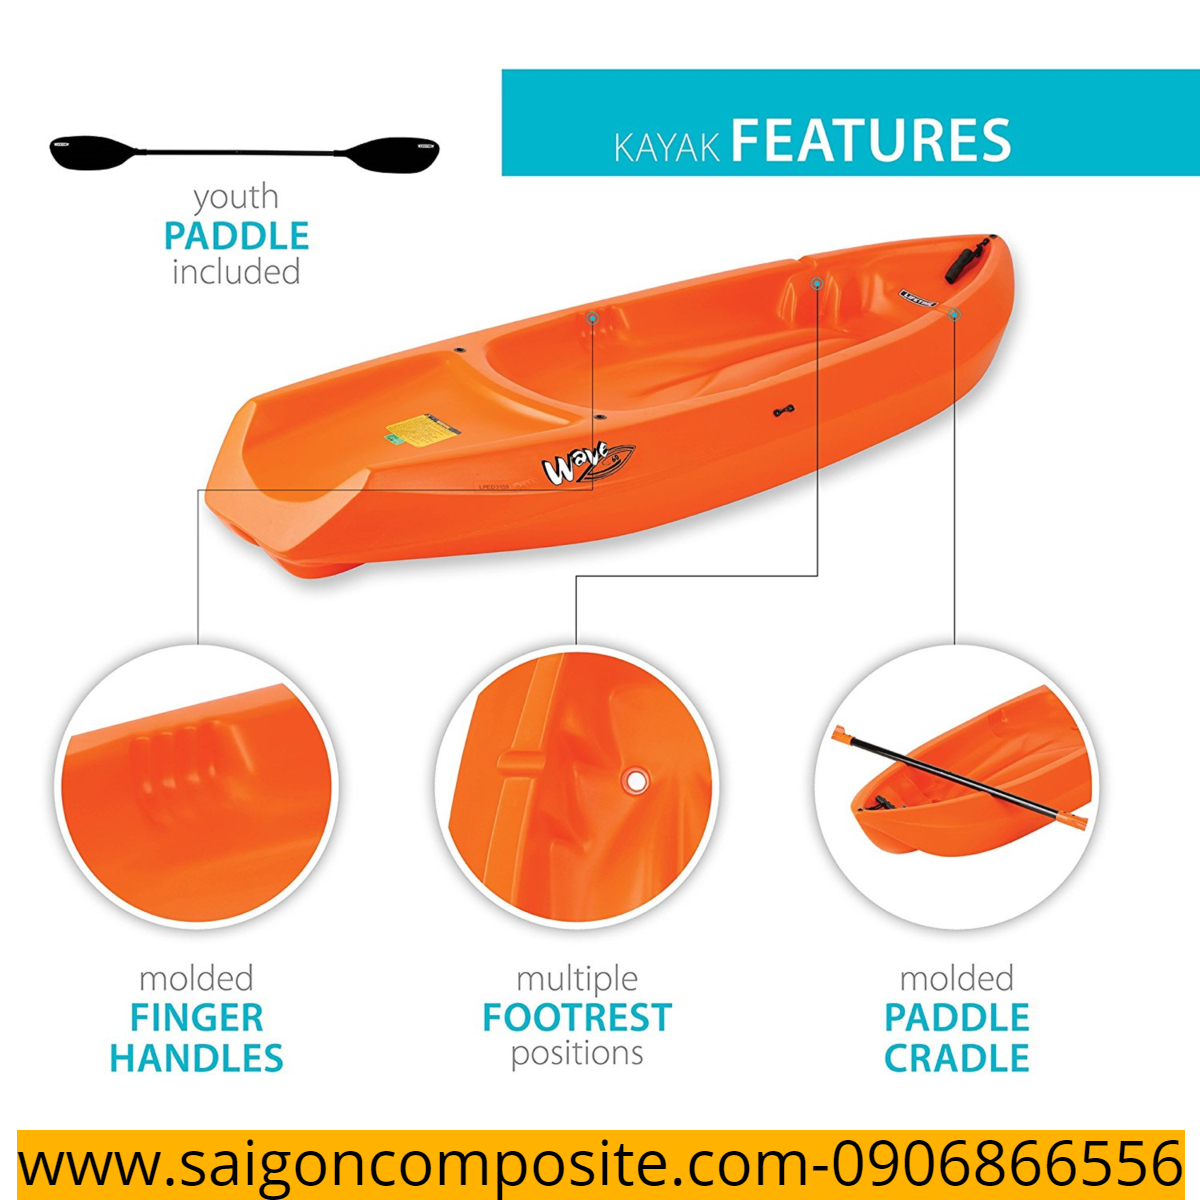 thuyền kayak, thuyền chèo, thuyền chèo trẻ em, thuyền kayak cho trẻ em giá rẻ, thuyền kayak an toàn cho trẻ, chất liệu composite